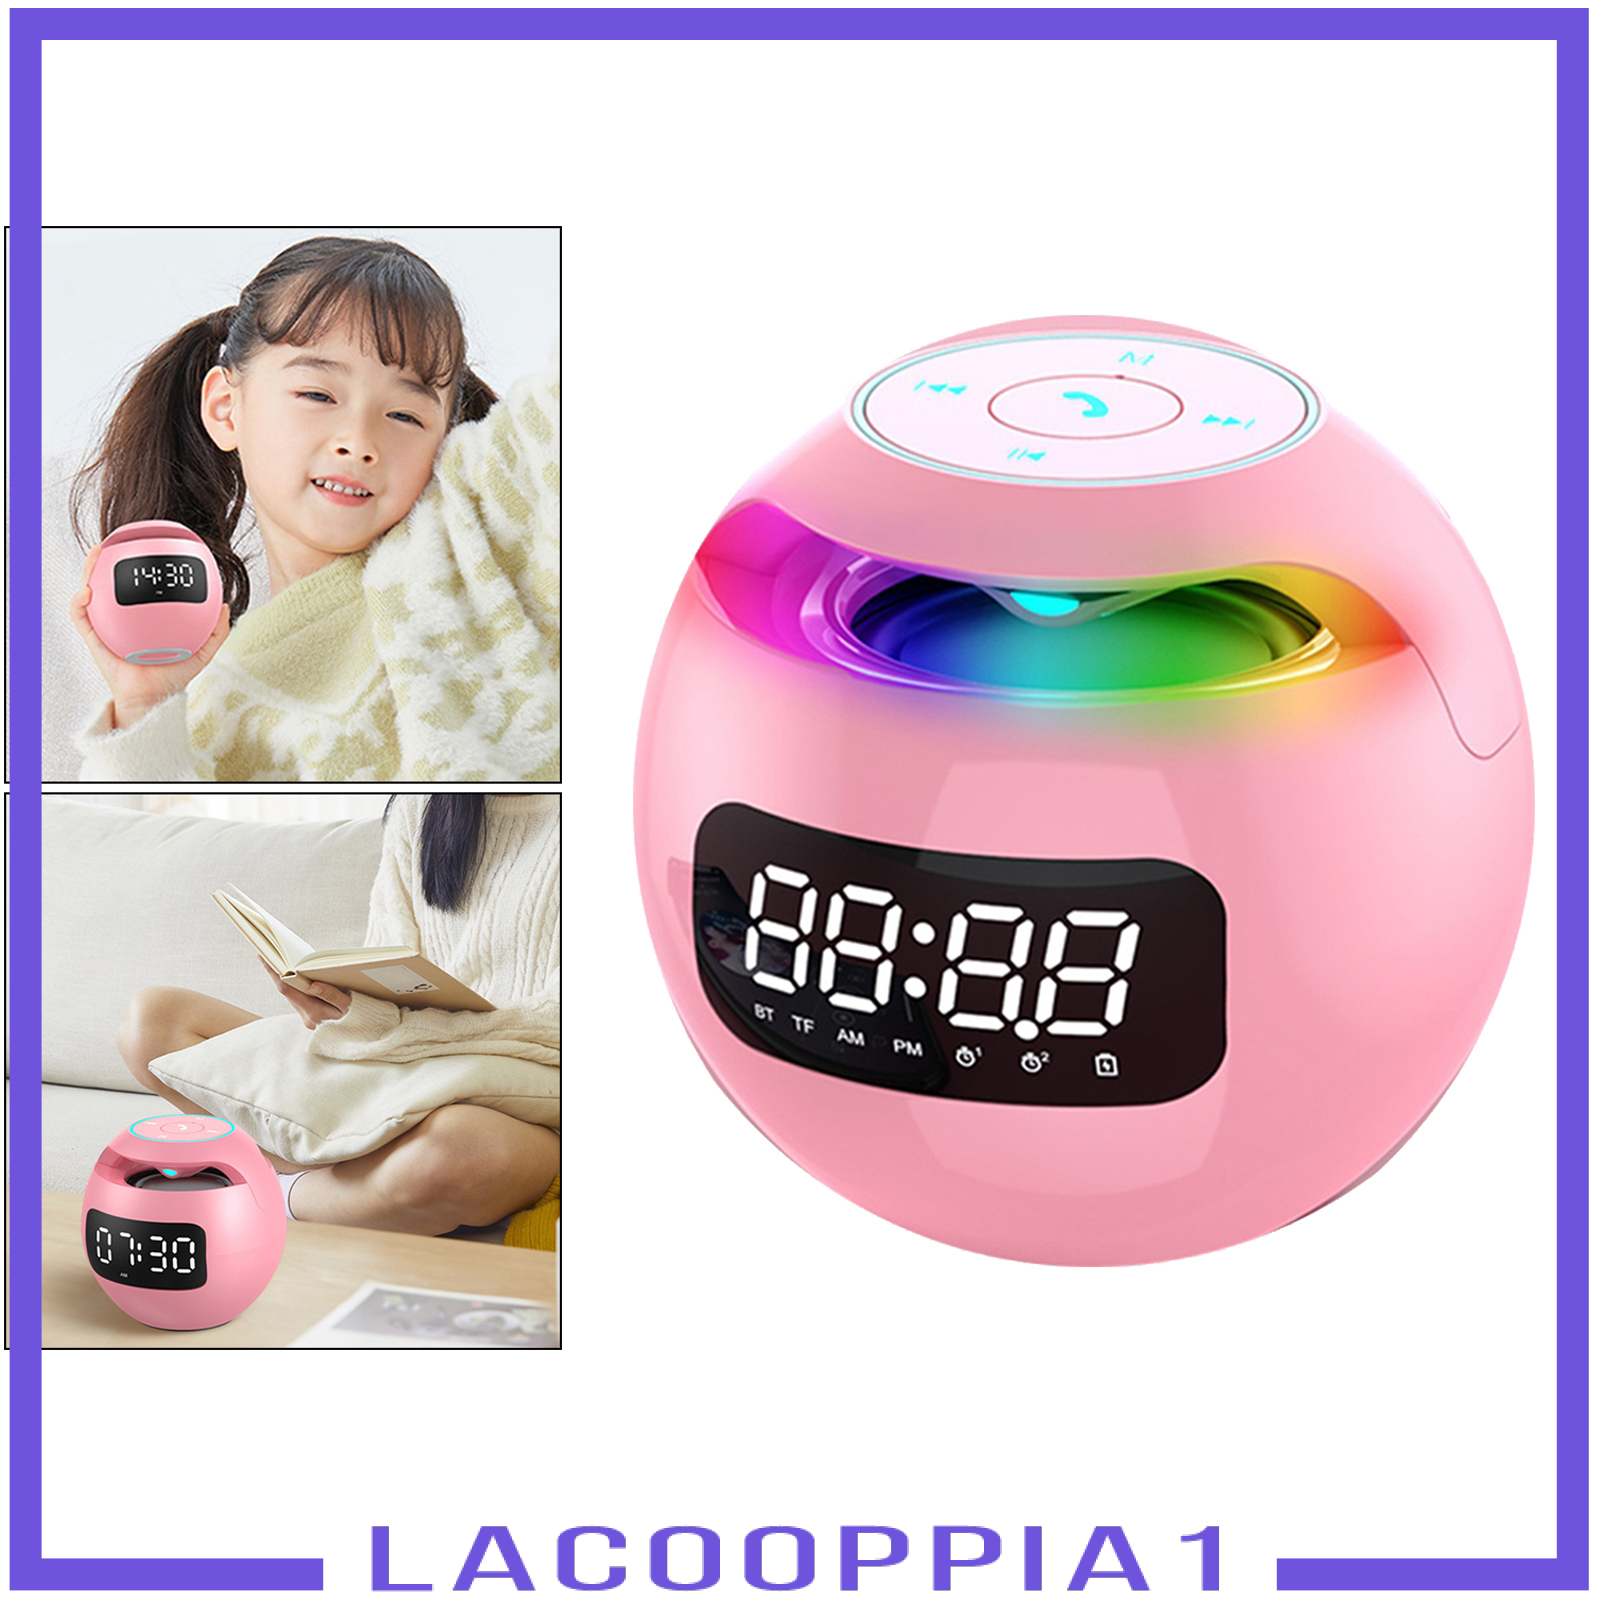 Loa Lapopoppia1 Siêu Trầm Không Dây Kết Nối Bluetooth